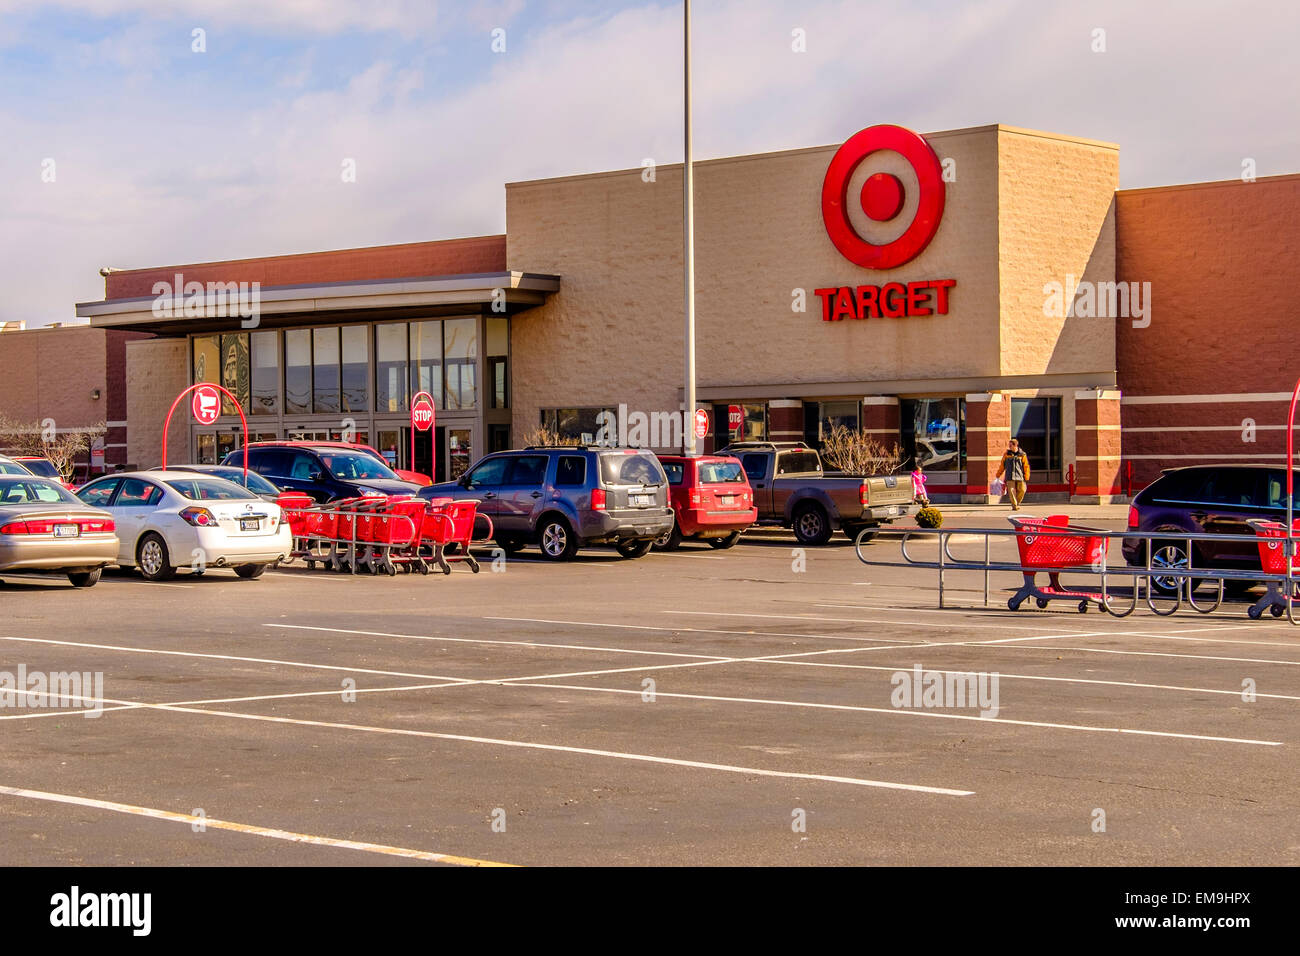 Ziel, eine Ladenkette Rabatt in Oklahoma City, Oklahoma, USA. Außen gedreht zeigt Gebäude und Parkplatz. Stockfoto